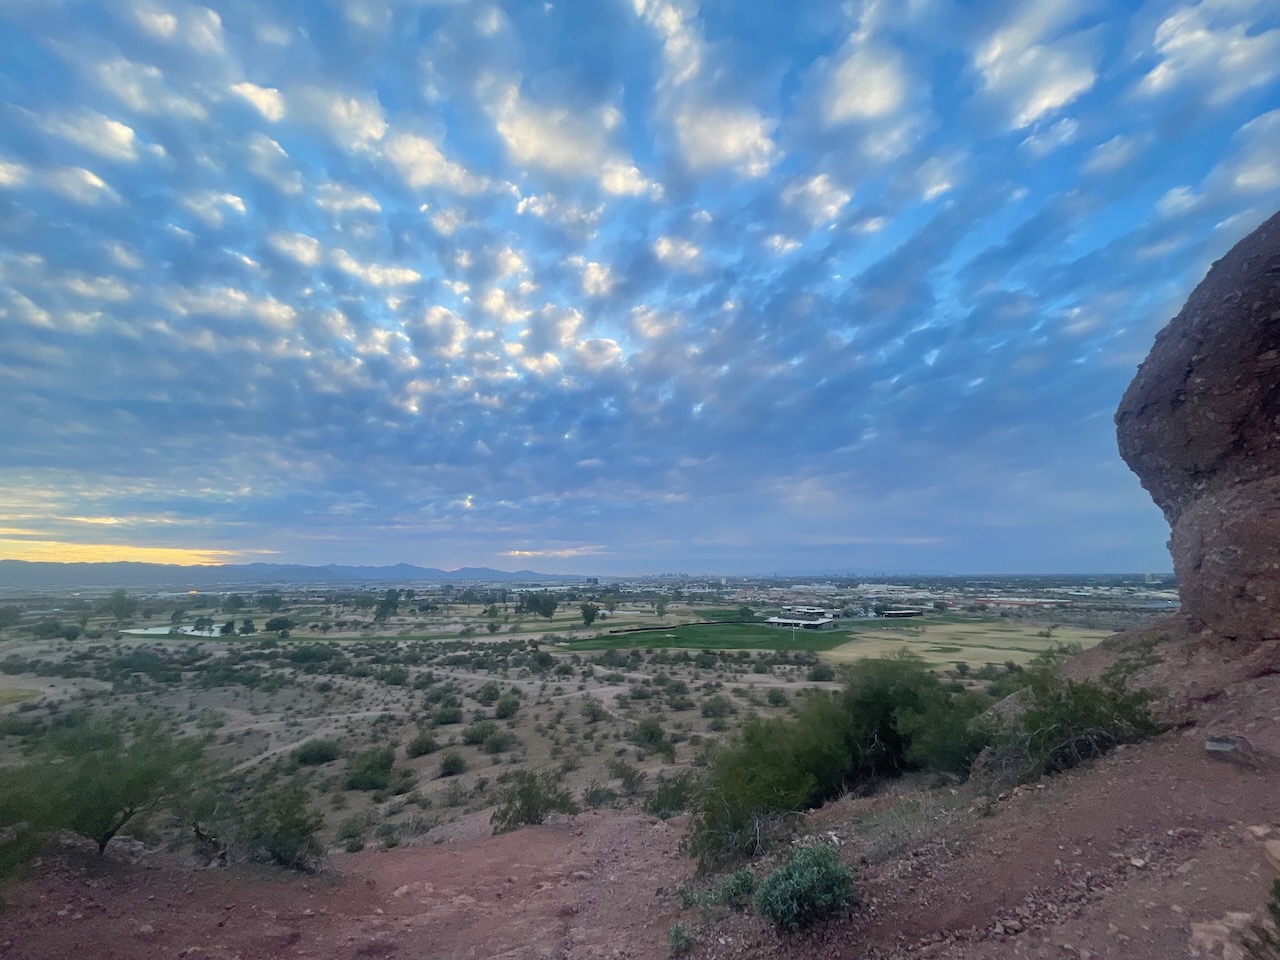 Sky over Phoenix, AZ